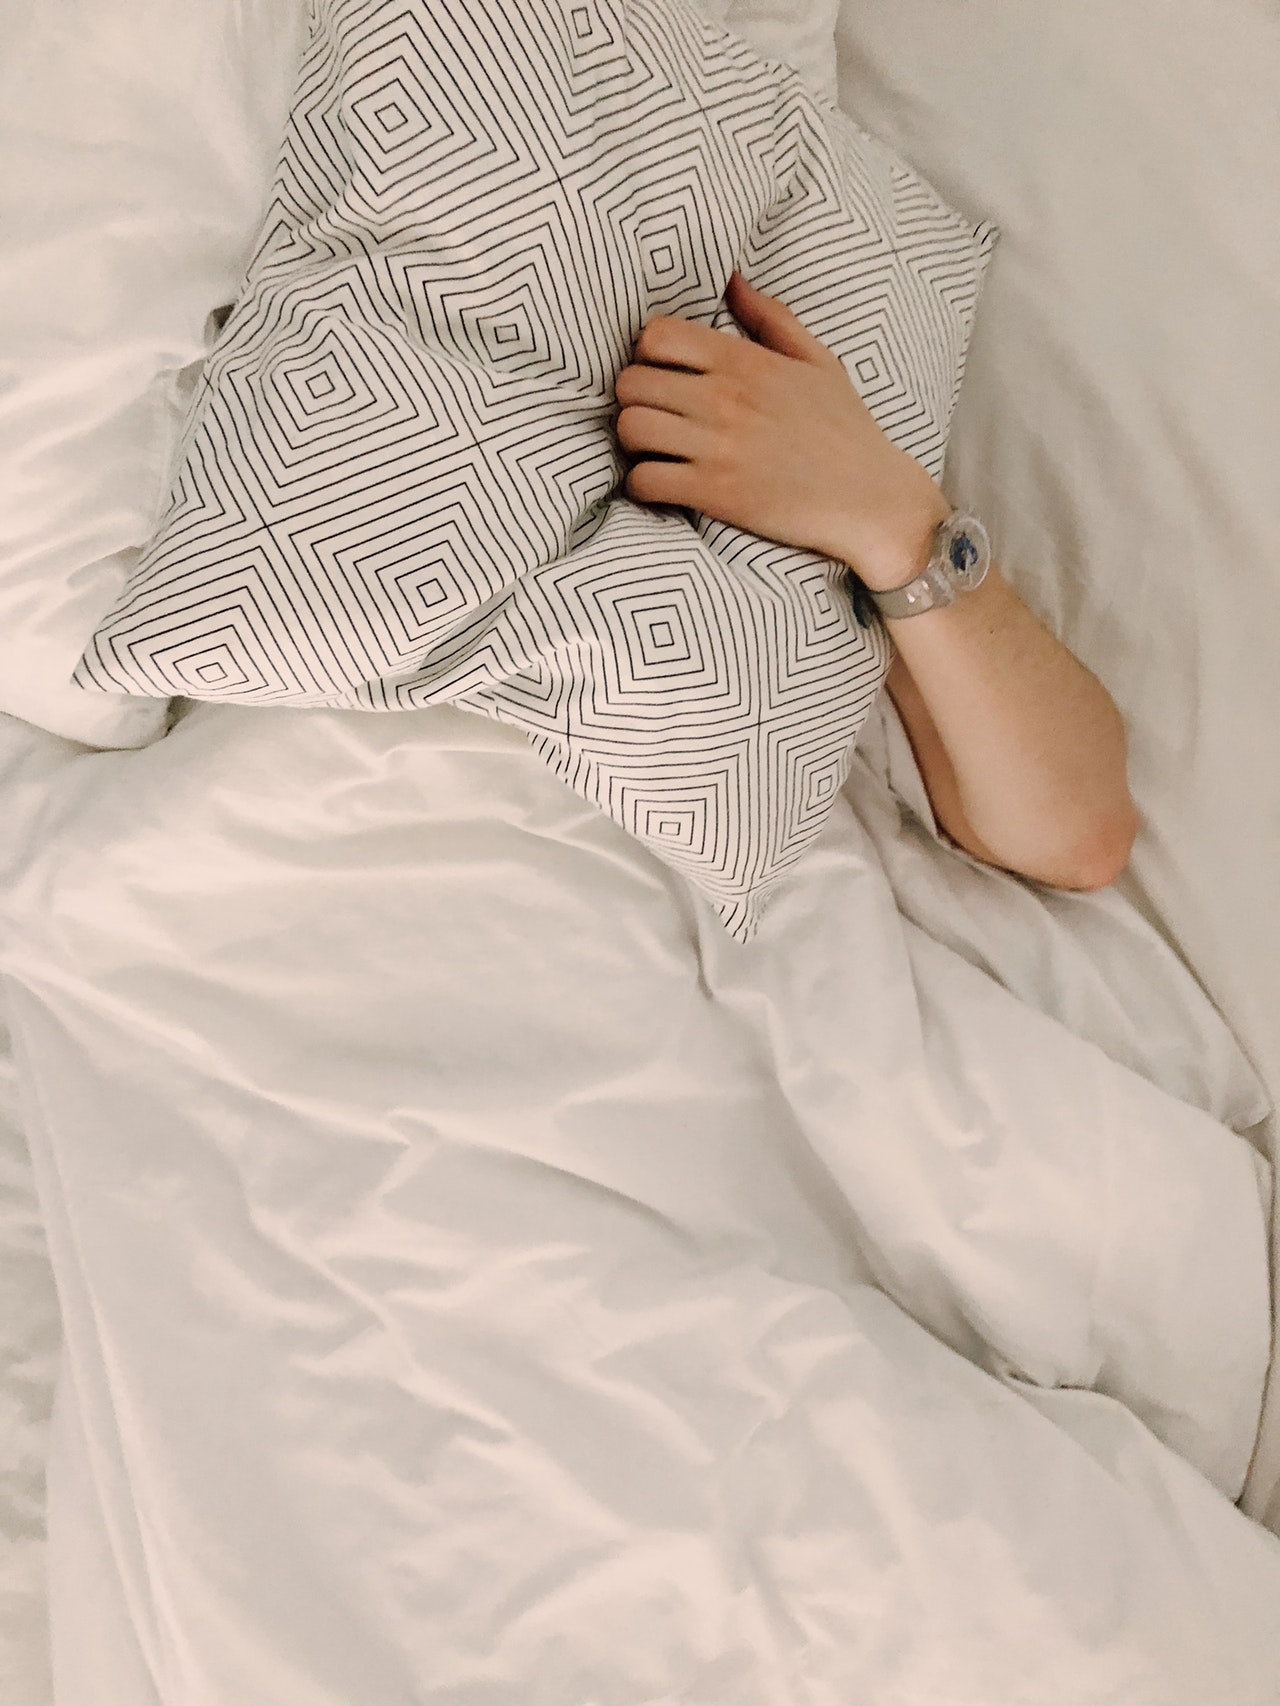 4 ขั้นตอนซ่อมที่นอนส่งเสียงดังรบกวนใจทำตามง่าย ๆ